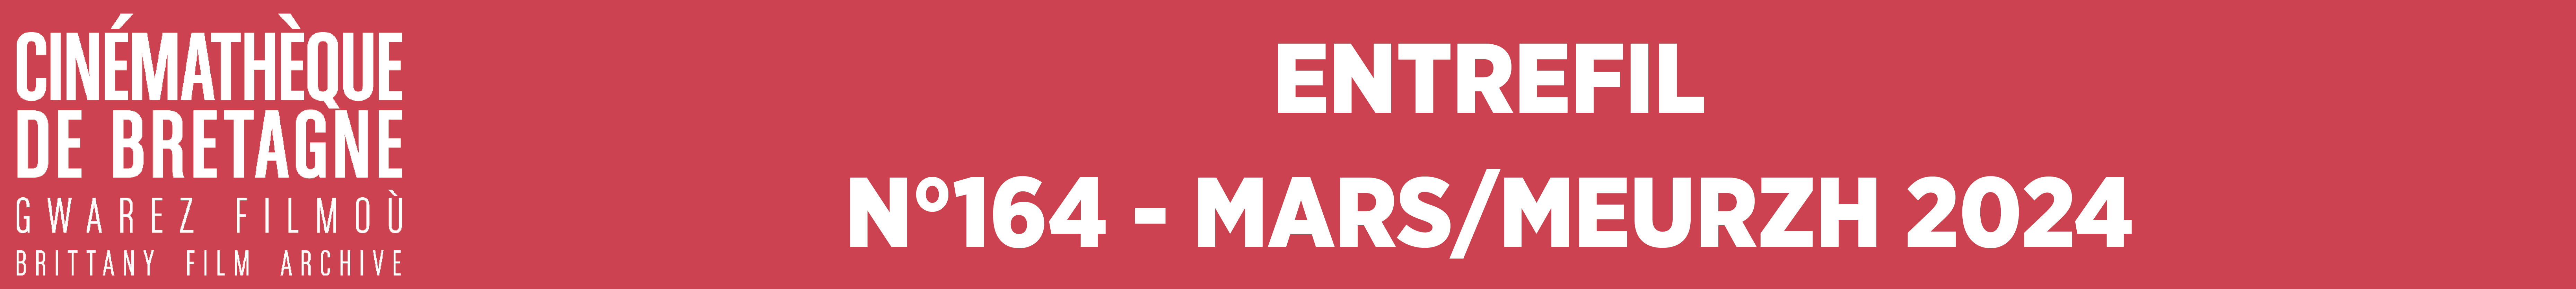 Entrefil N°164 - Mars/Meurzh 2024